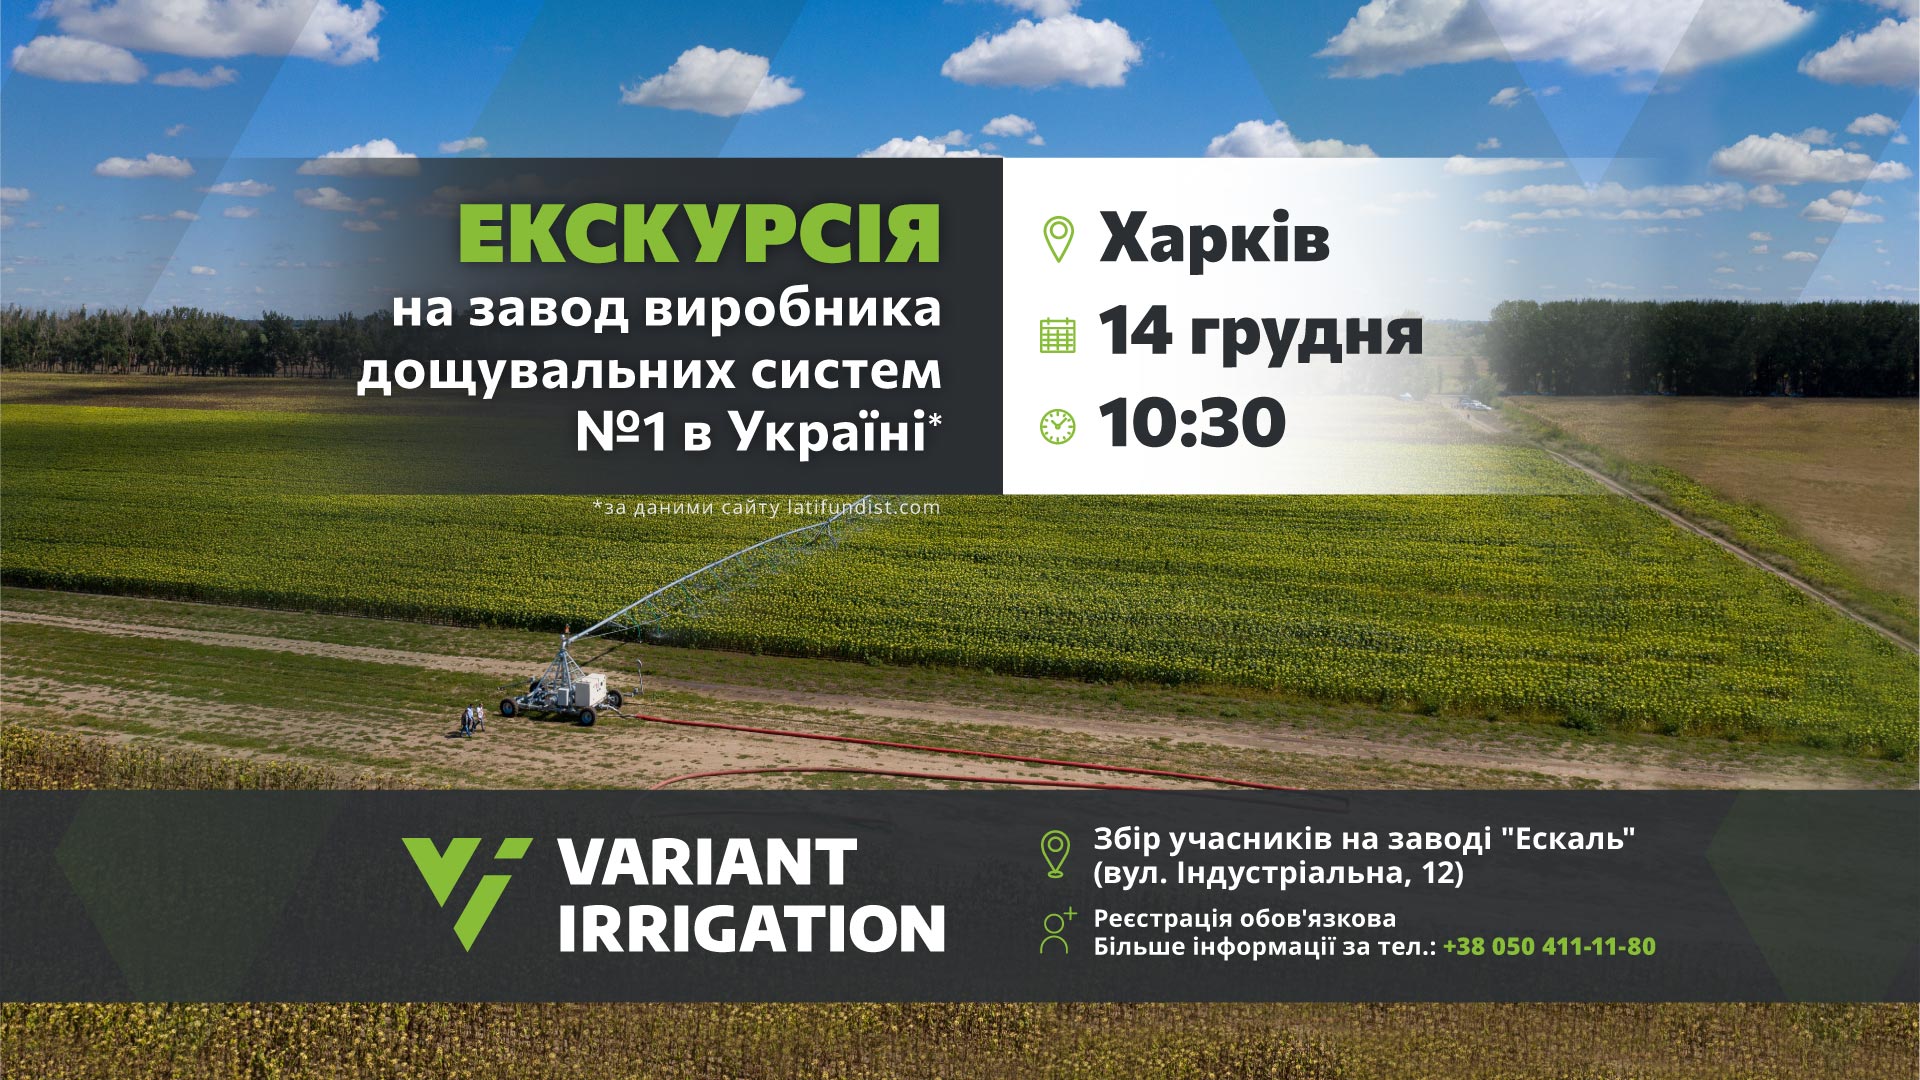 Запрошення аграріїв на екскурсію виробничим майданчиком Variant Irrigation 